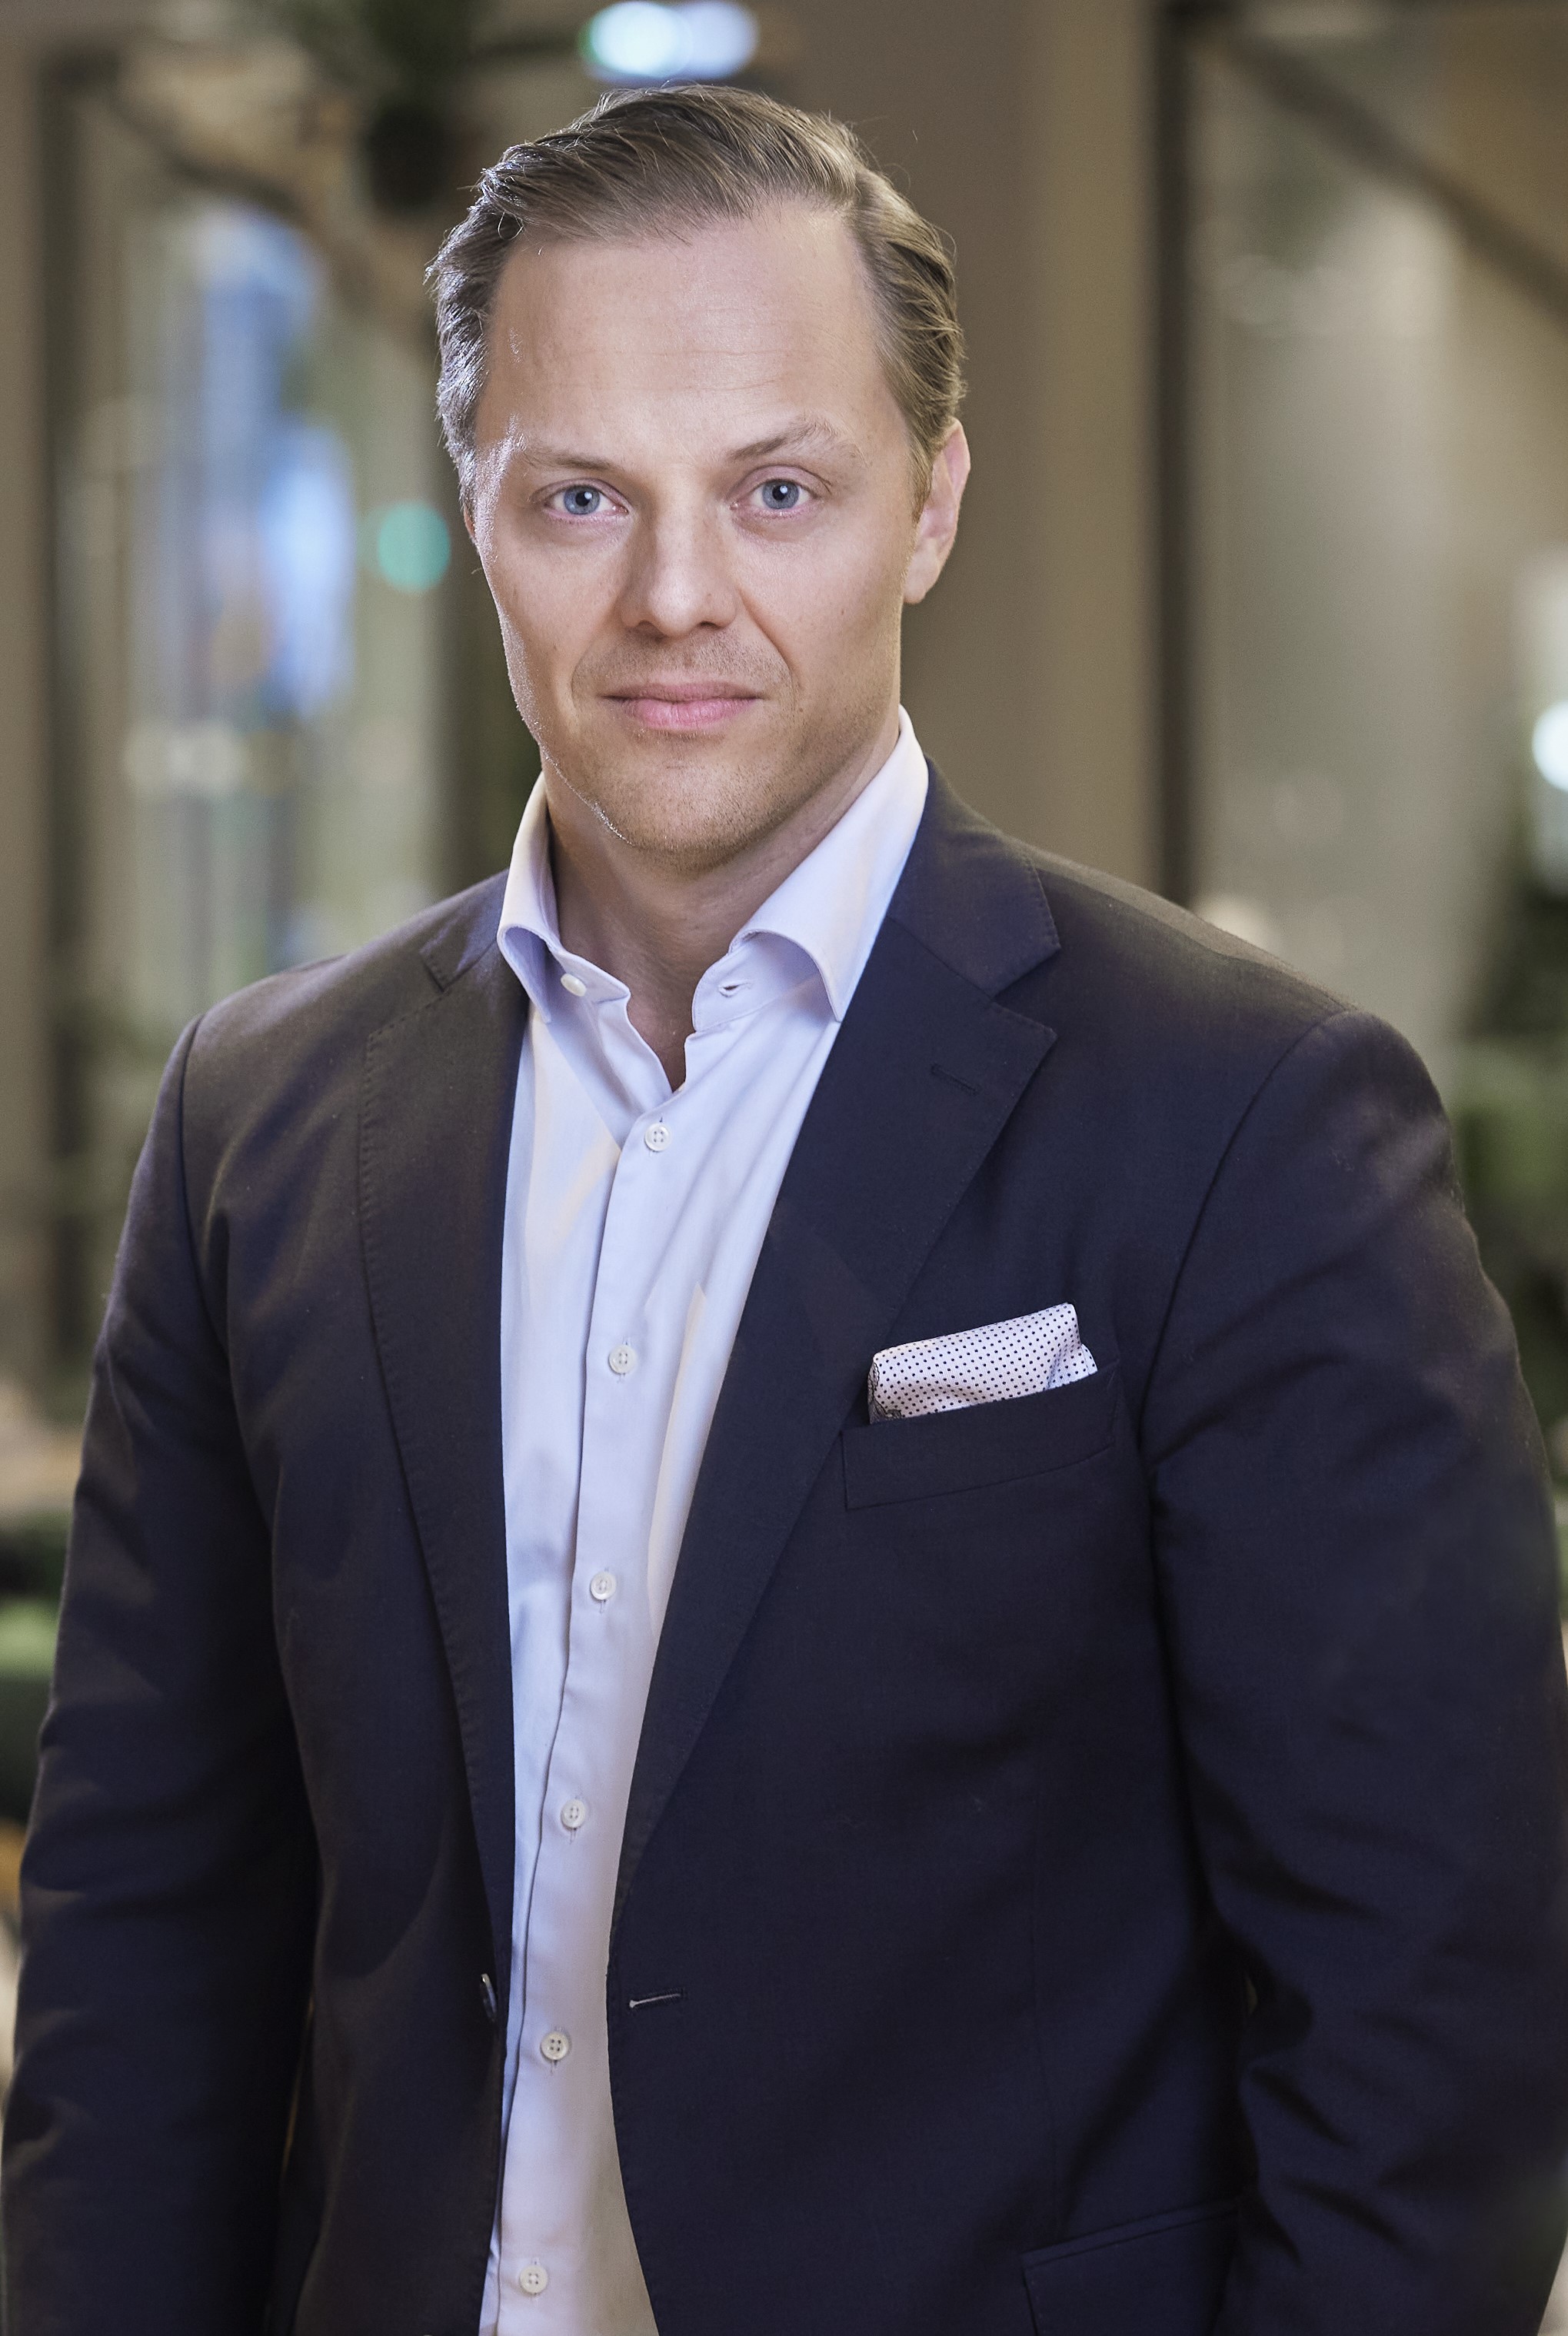 Lars Vestad, Communication Manager